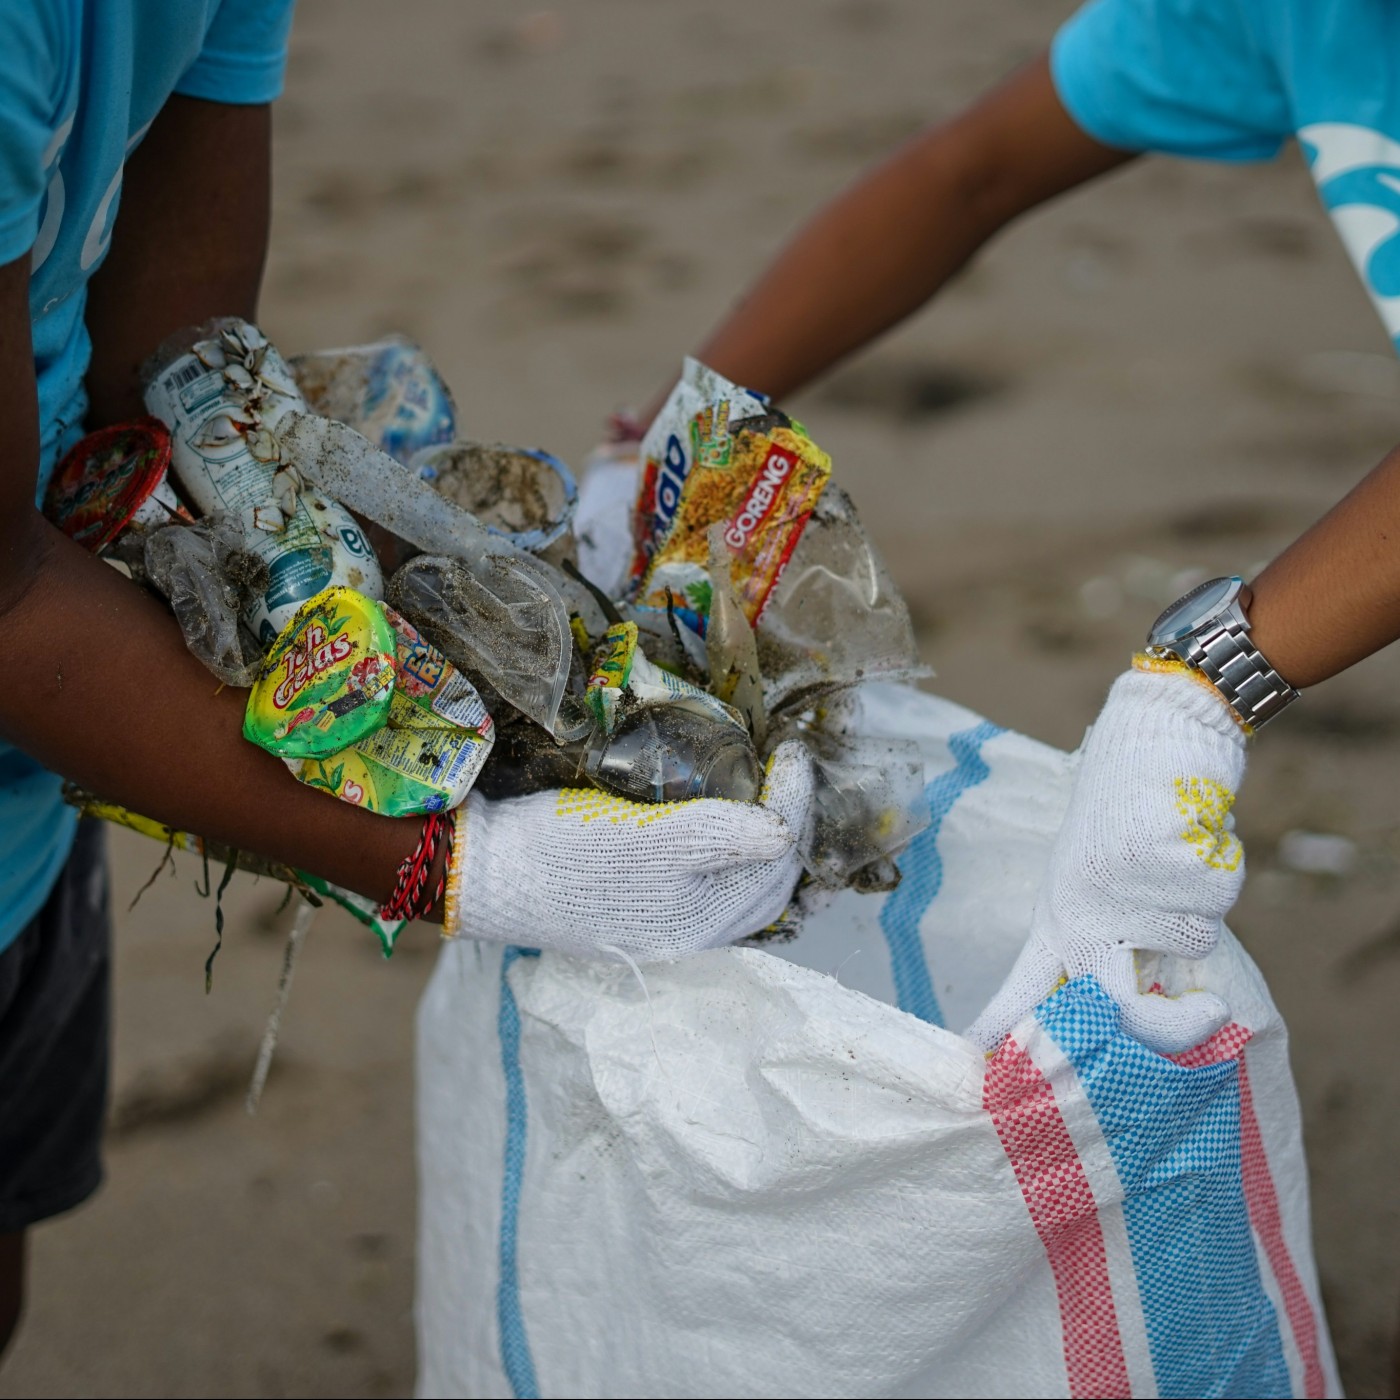 Des collectes pour nettoyer les plages